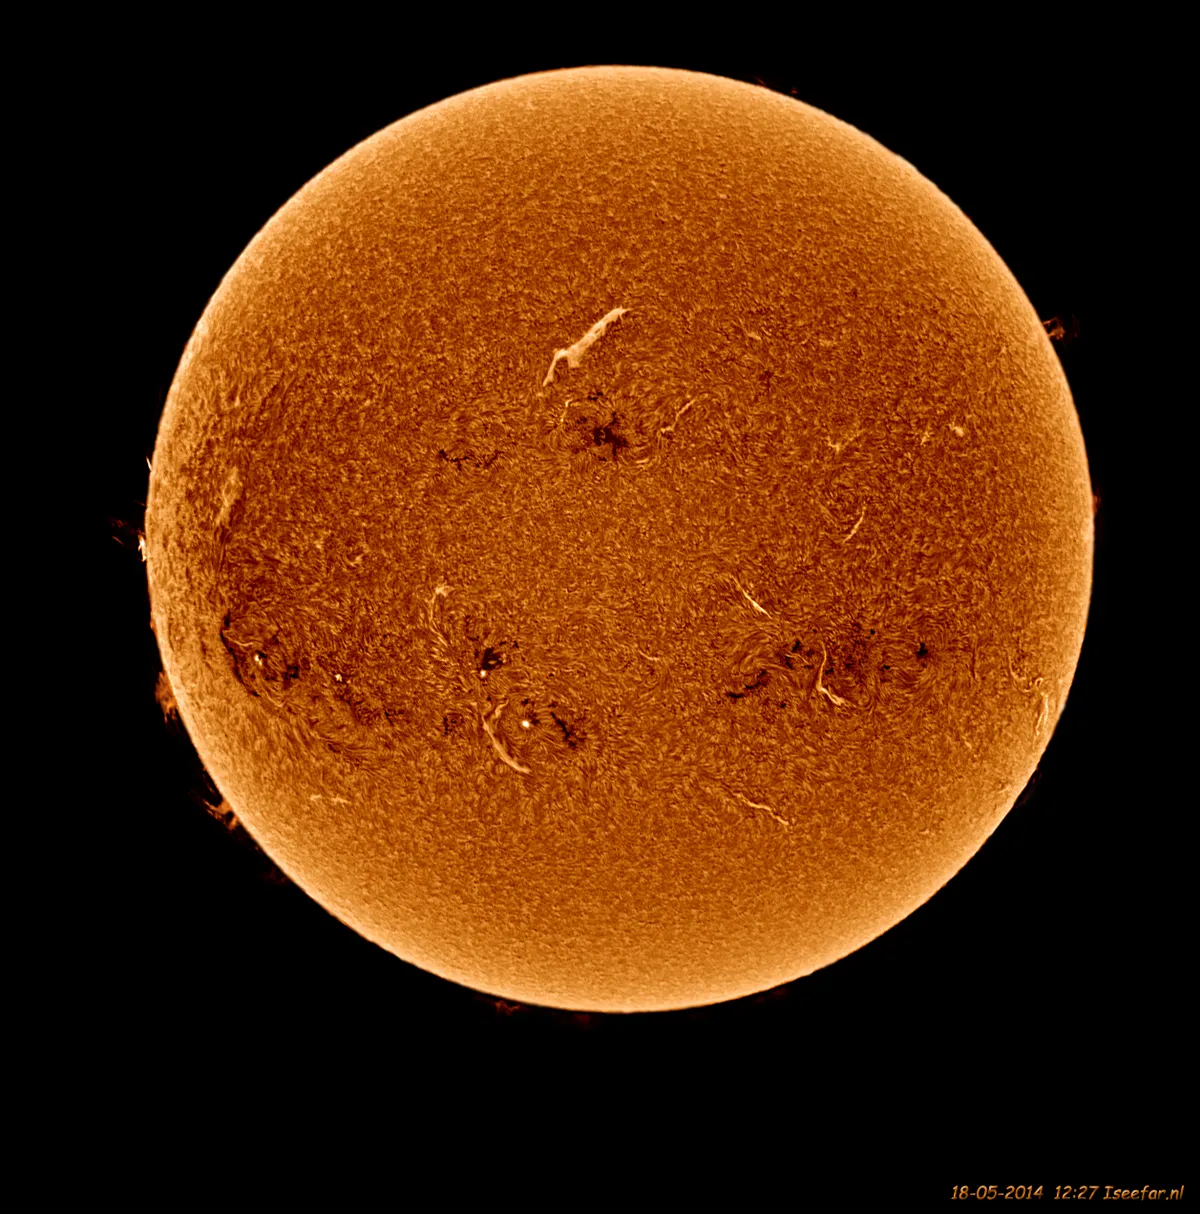 The Sun 18-05-2014 by Ivar Kooren, Heenvliet, The Netherlands. Equipment: ASI120MM, NEQ6, Solarmax 60S